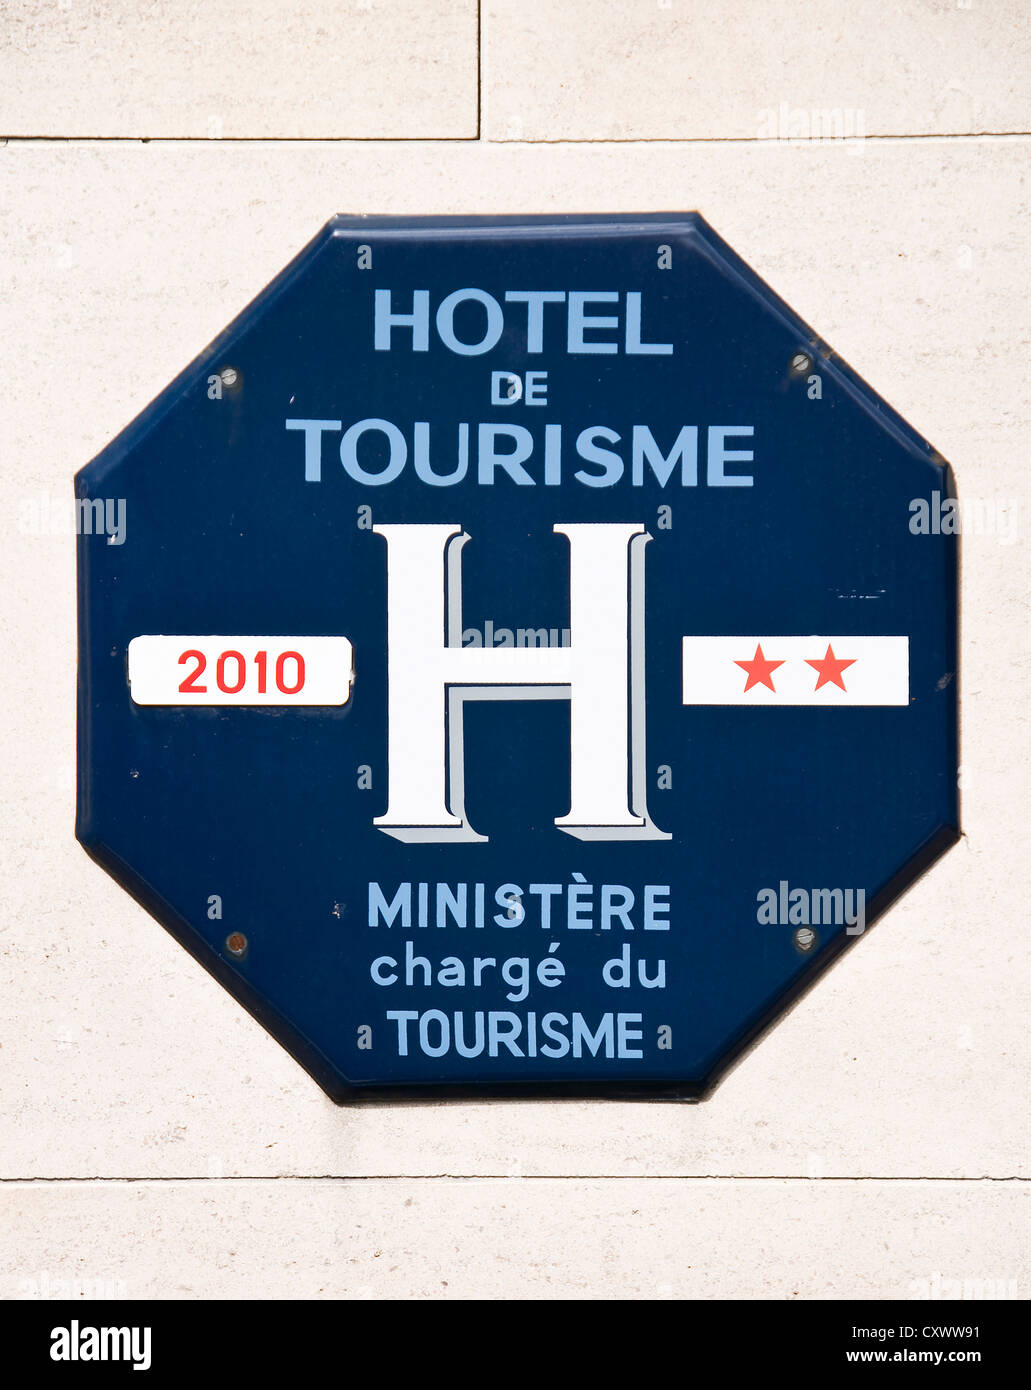 Hotel de dos estrellas francesas cartel oficial del ministerio de turismo : octogon azul con el texto hotel de tourisme Foto de stock